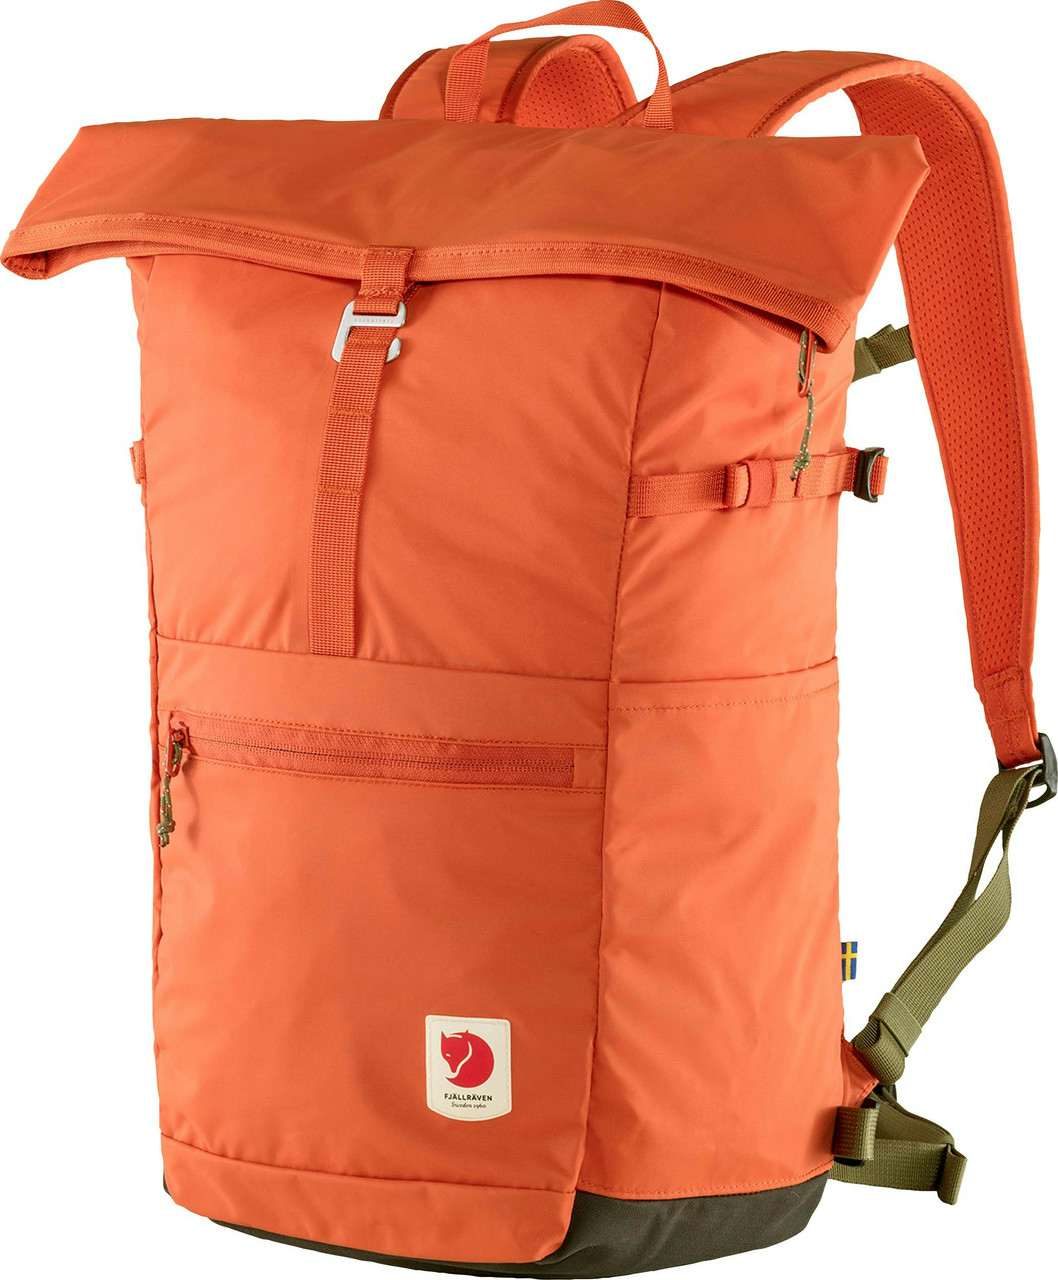 High Coast Foldsack 24 Backpack Rowan Red